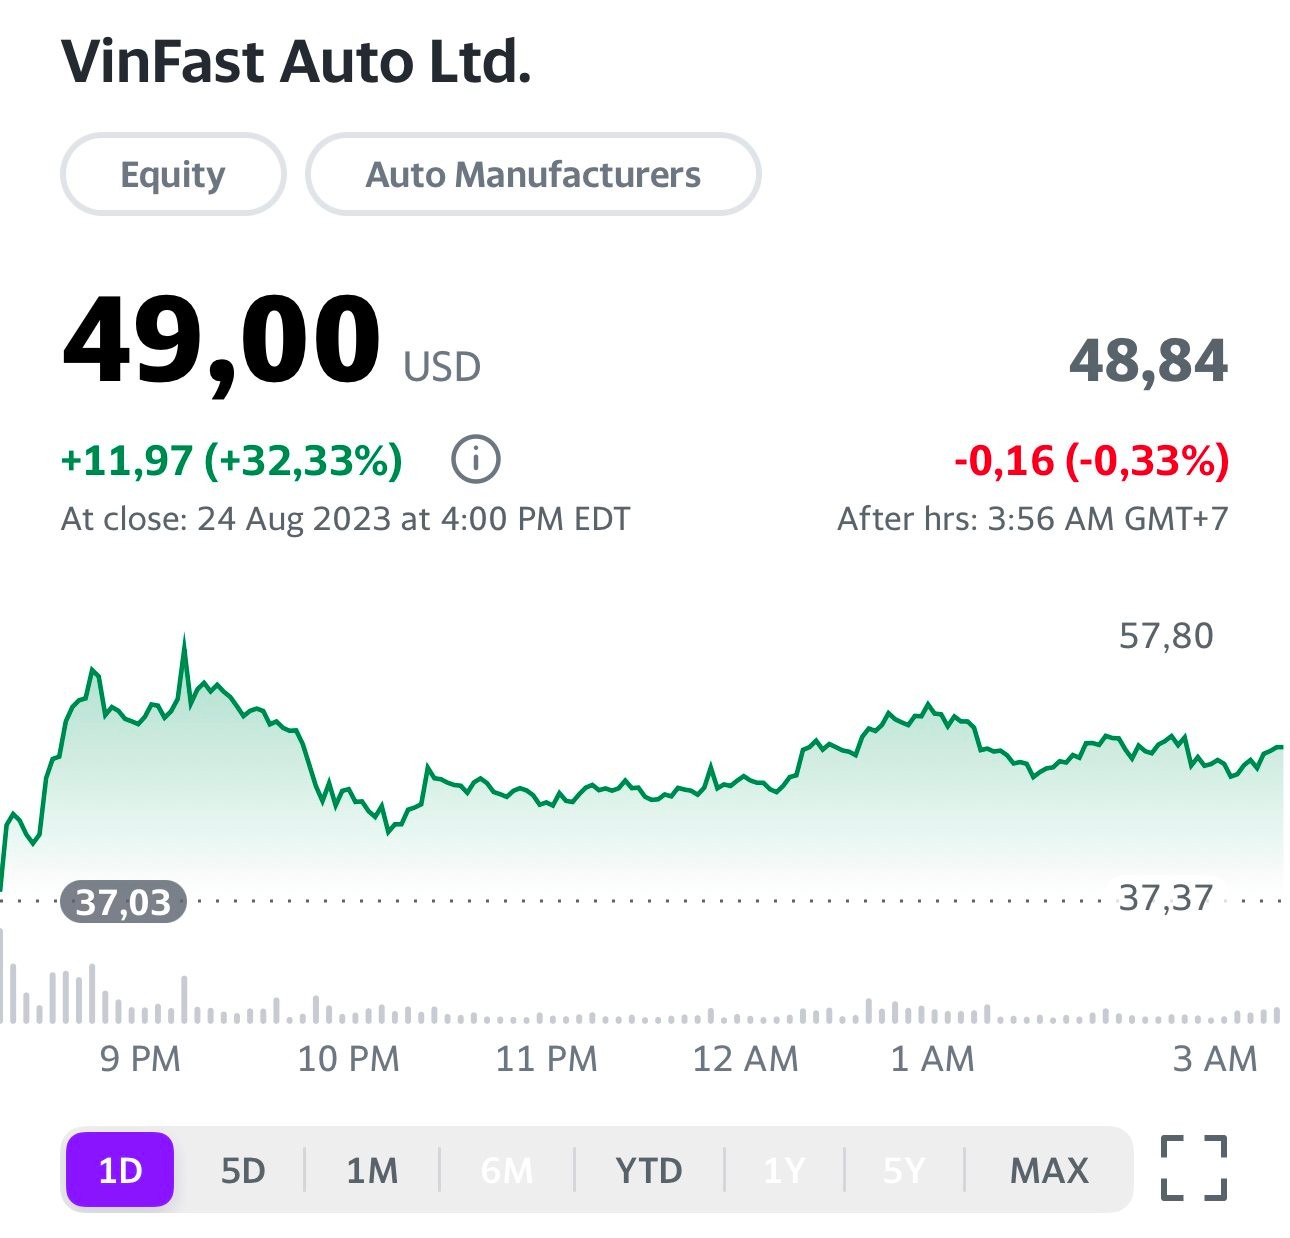 Vốn hoá VinFast đạt 112 tỷ USD, vượt hãng siêu xe Porsche, chỉ sau Tesla và Toyota